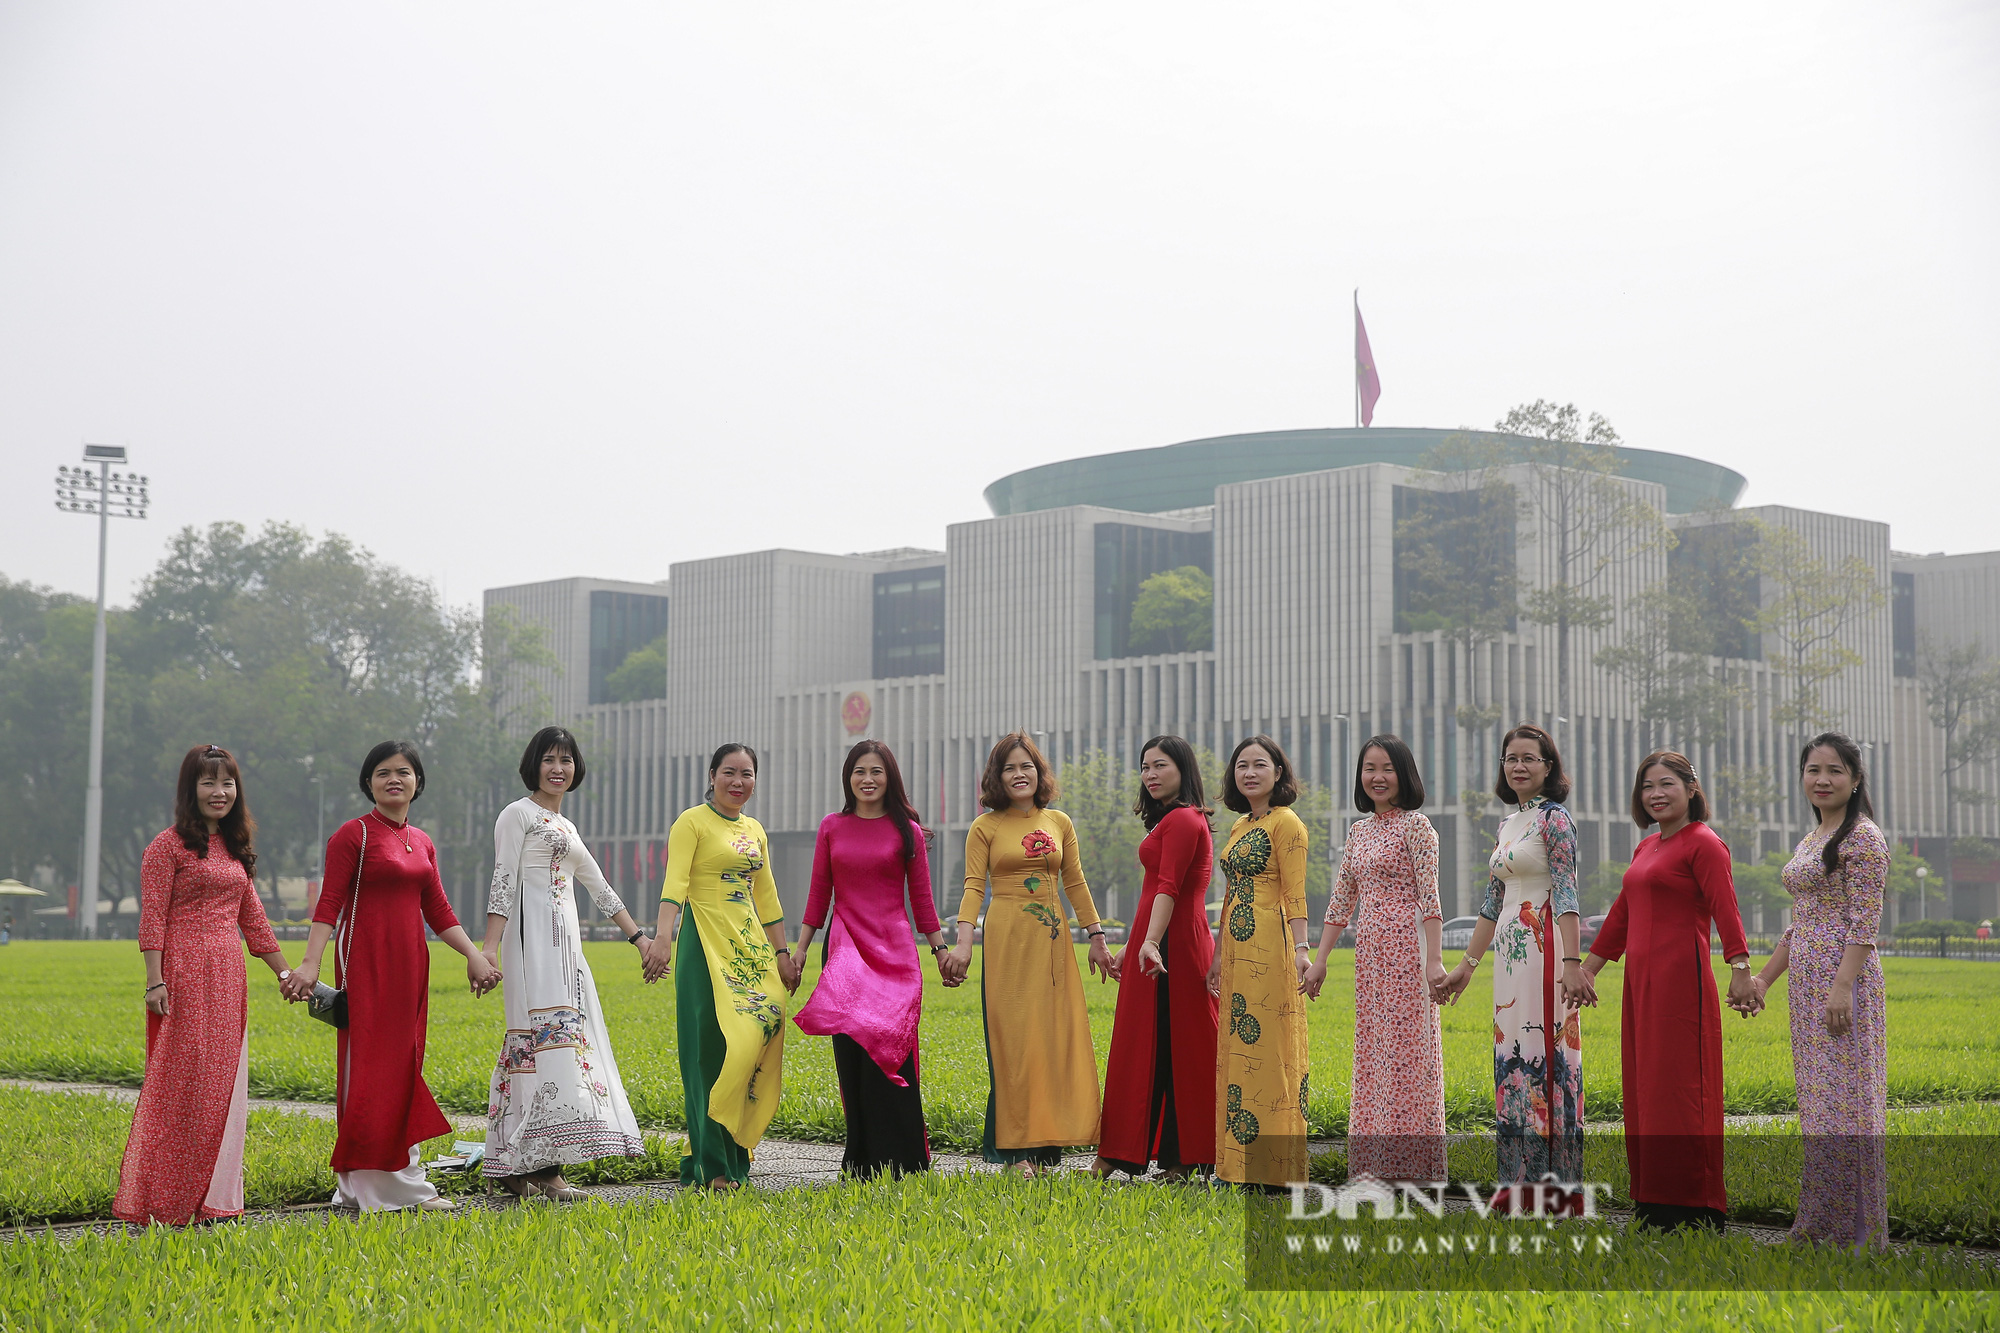 Bất ngờ lượng du khách tham quan lăng Bác, bảo tàng tại Hà Nội trong sáng 30/4 - Ảnh 10.